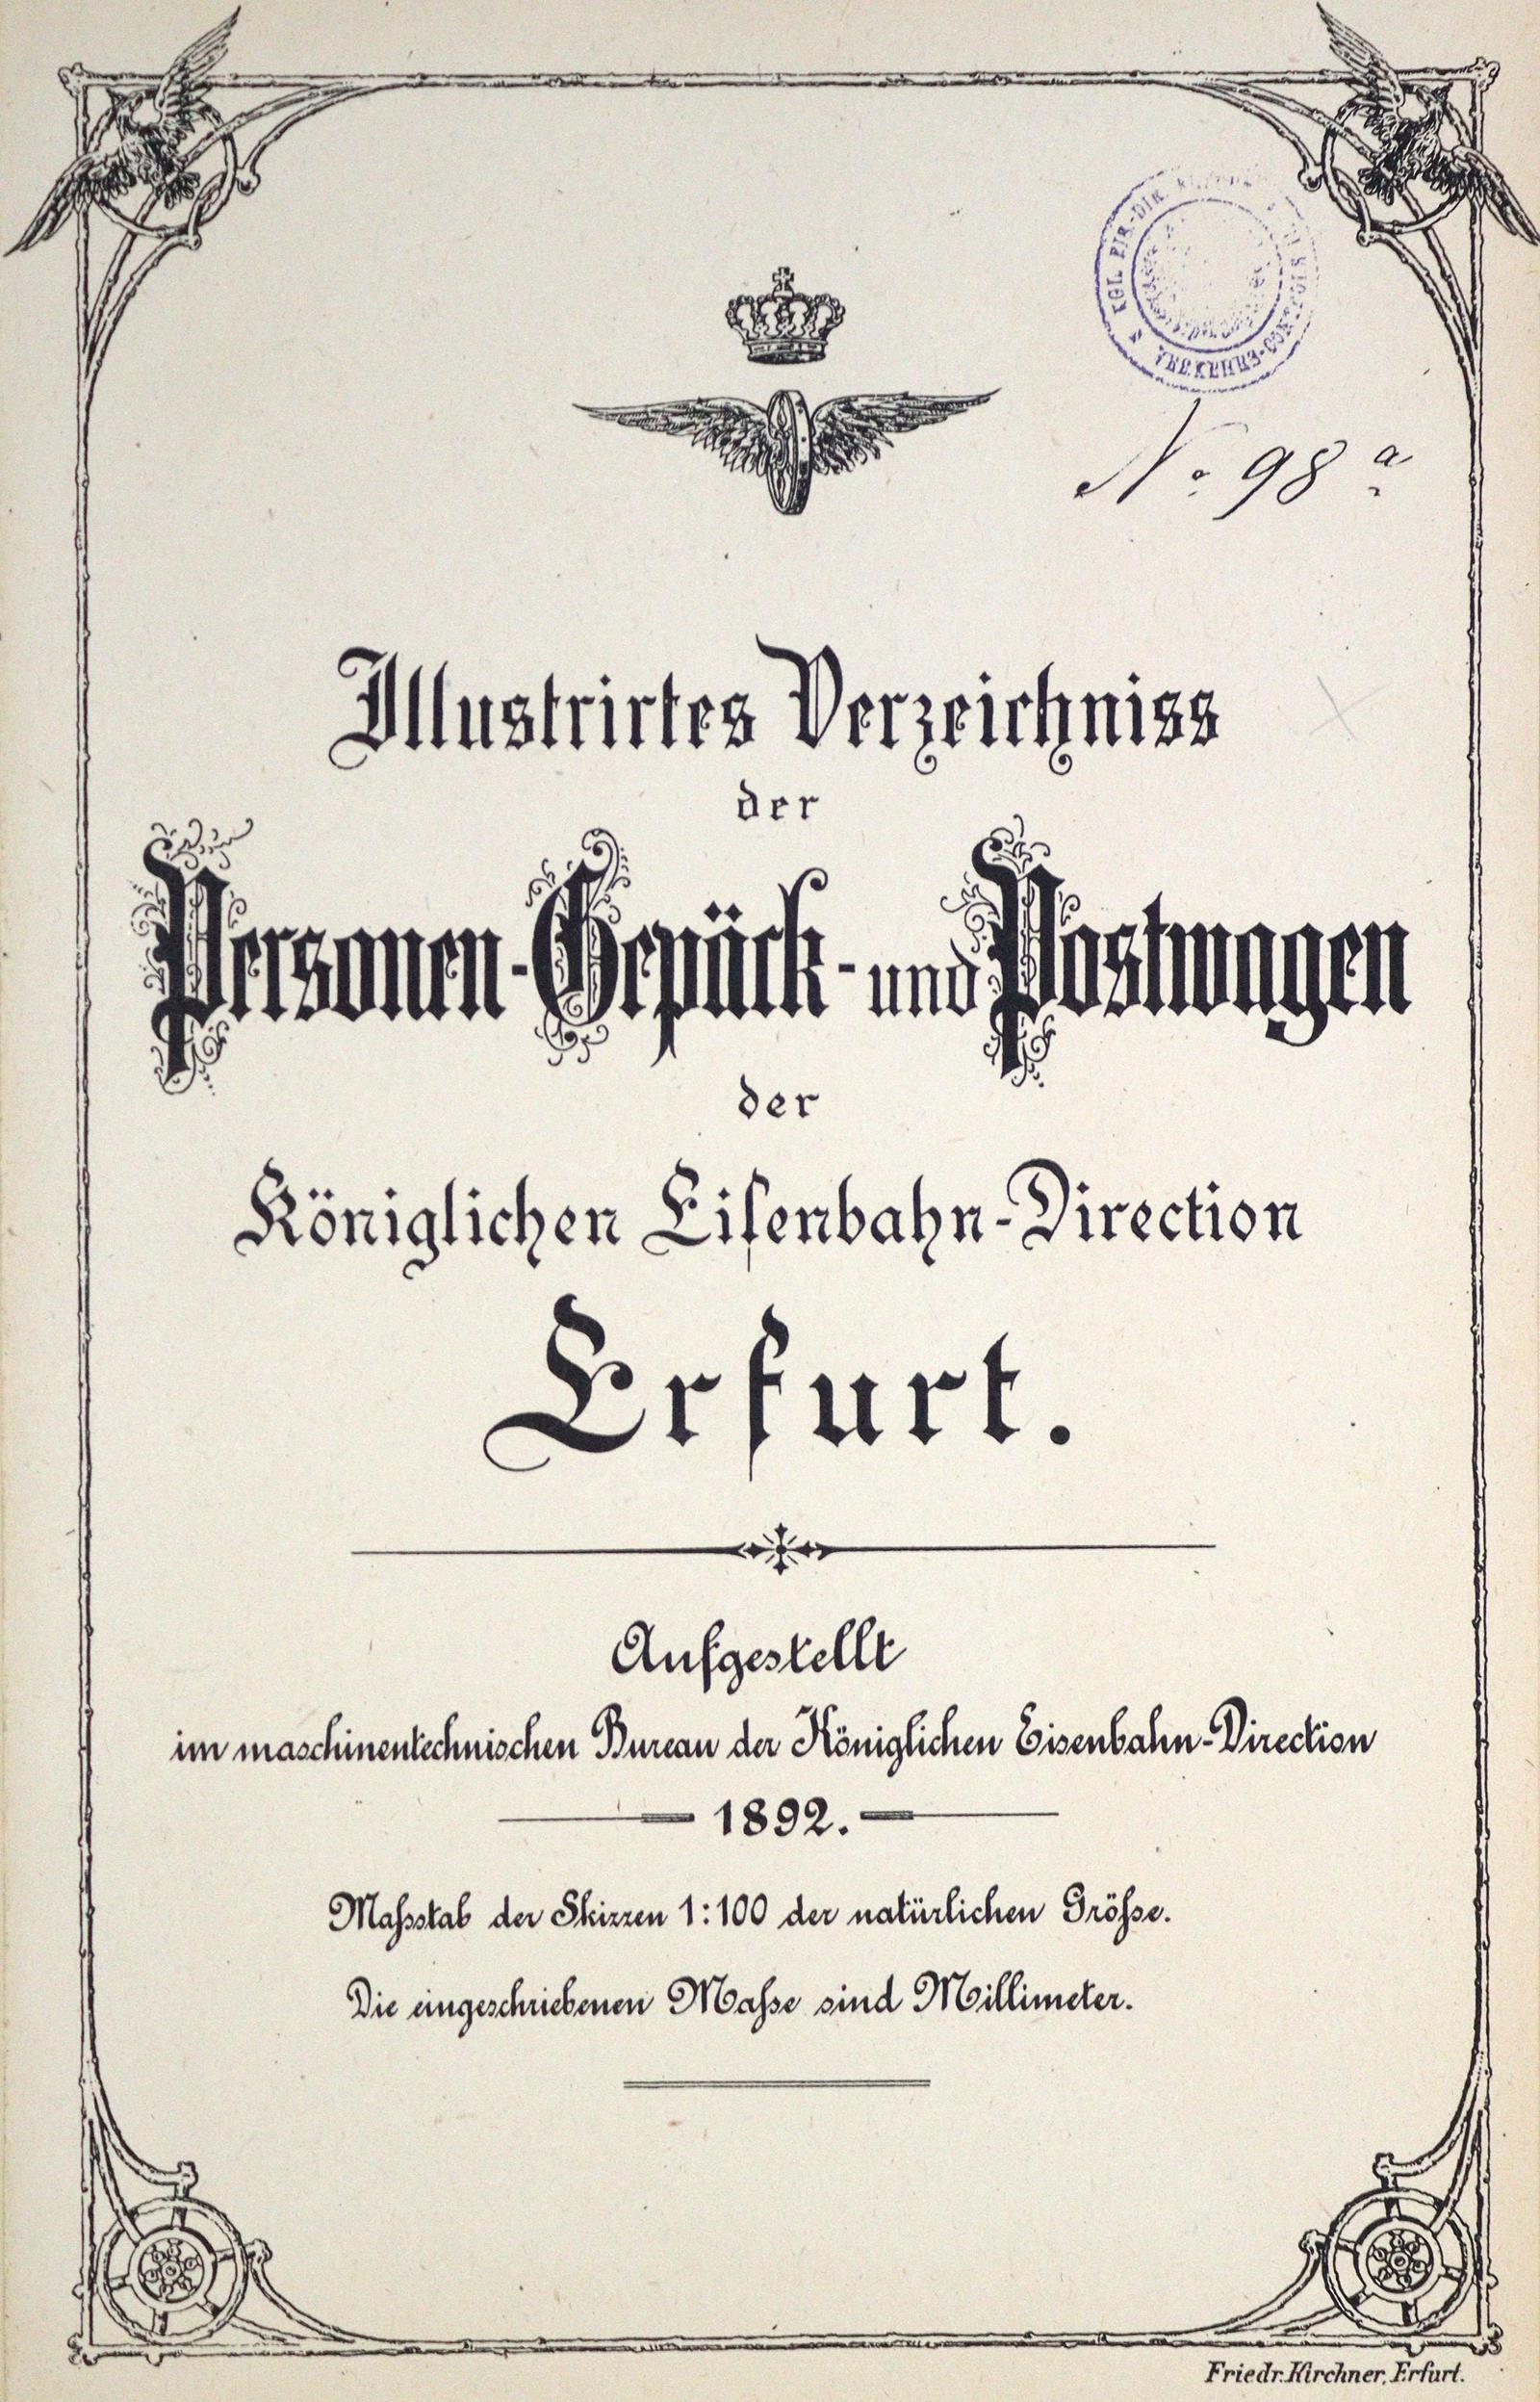 "Grosse Contor- und Bureau-Karte des Deutschen Reiches".